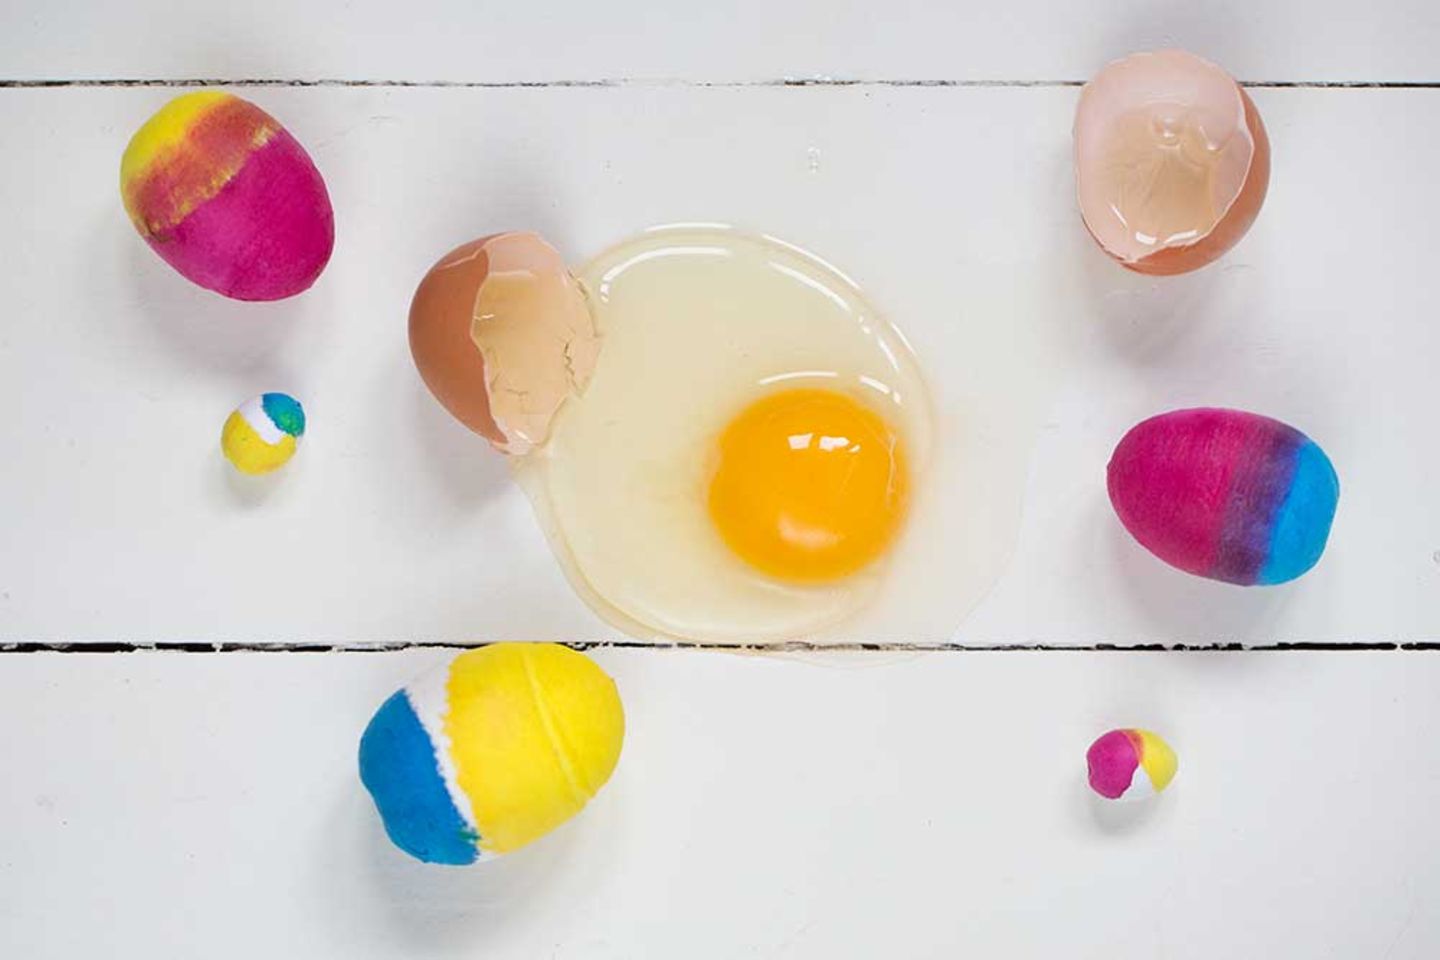 Osterschmuck in 10 Minuten? Das geht!      Einfach Watte-Eier färben. Das ist kinderleicht, schnell erledigt und man hat im Nu farbenfrohe Hingucker für den Osterstrauß.    